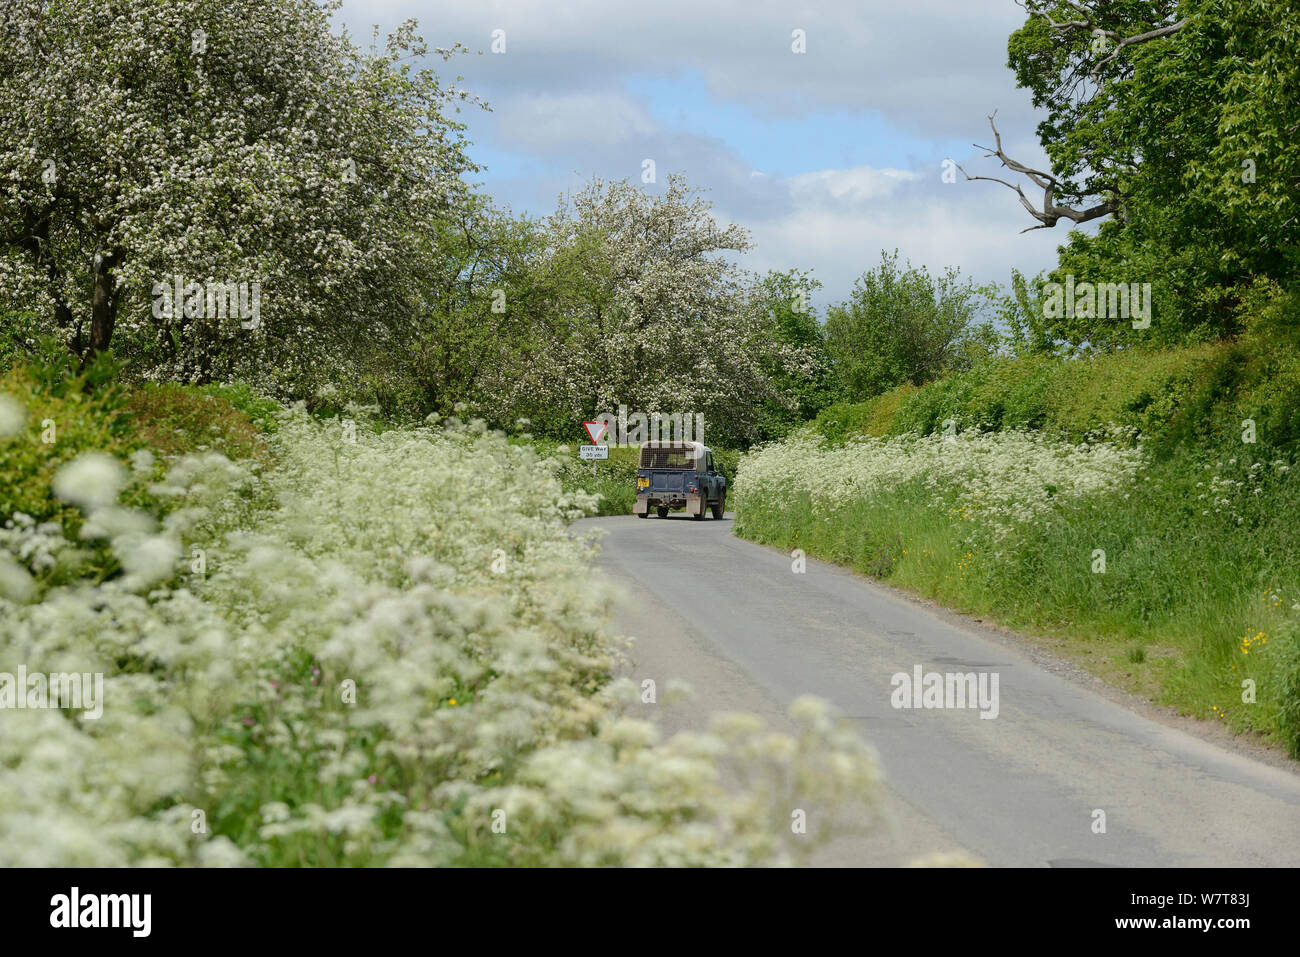 Il trattore su strada con orlo della fioritura mucca prezzemolo (Anthriscus sylvestris) e fioritura sidro meli in background, Herefordshire, UK, Giugno. Foto Stock